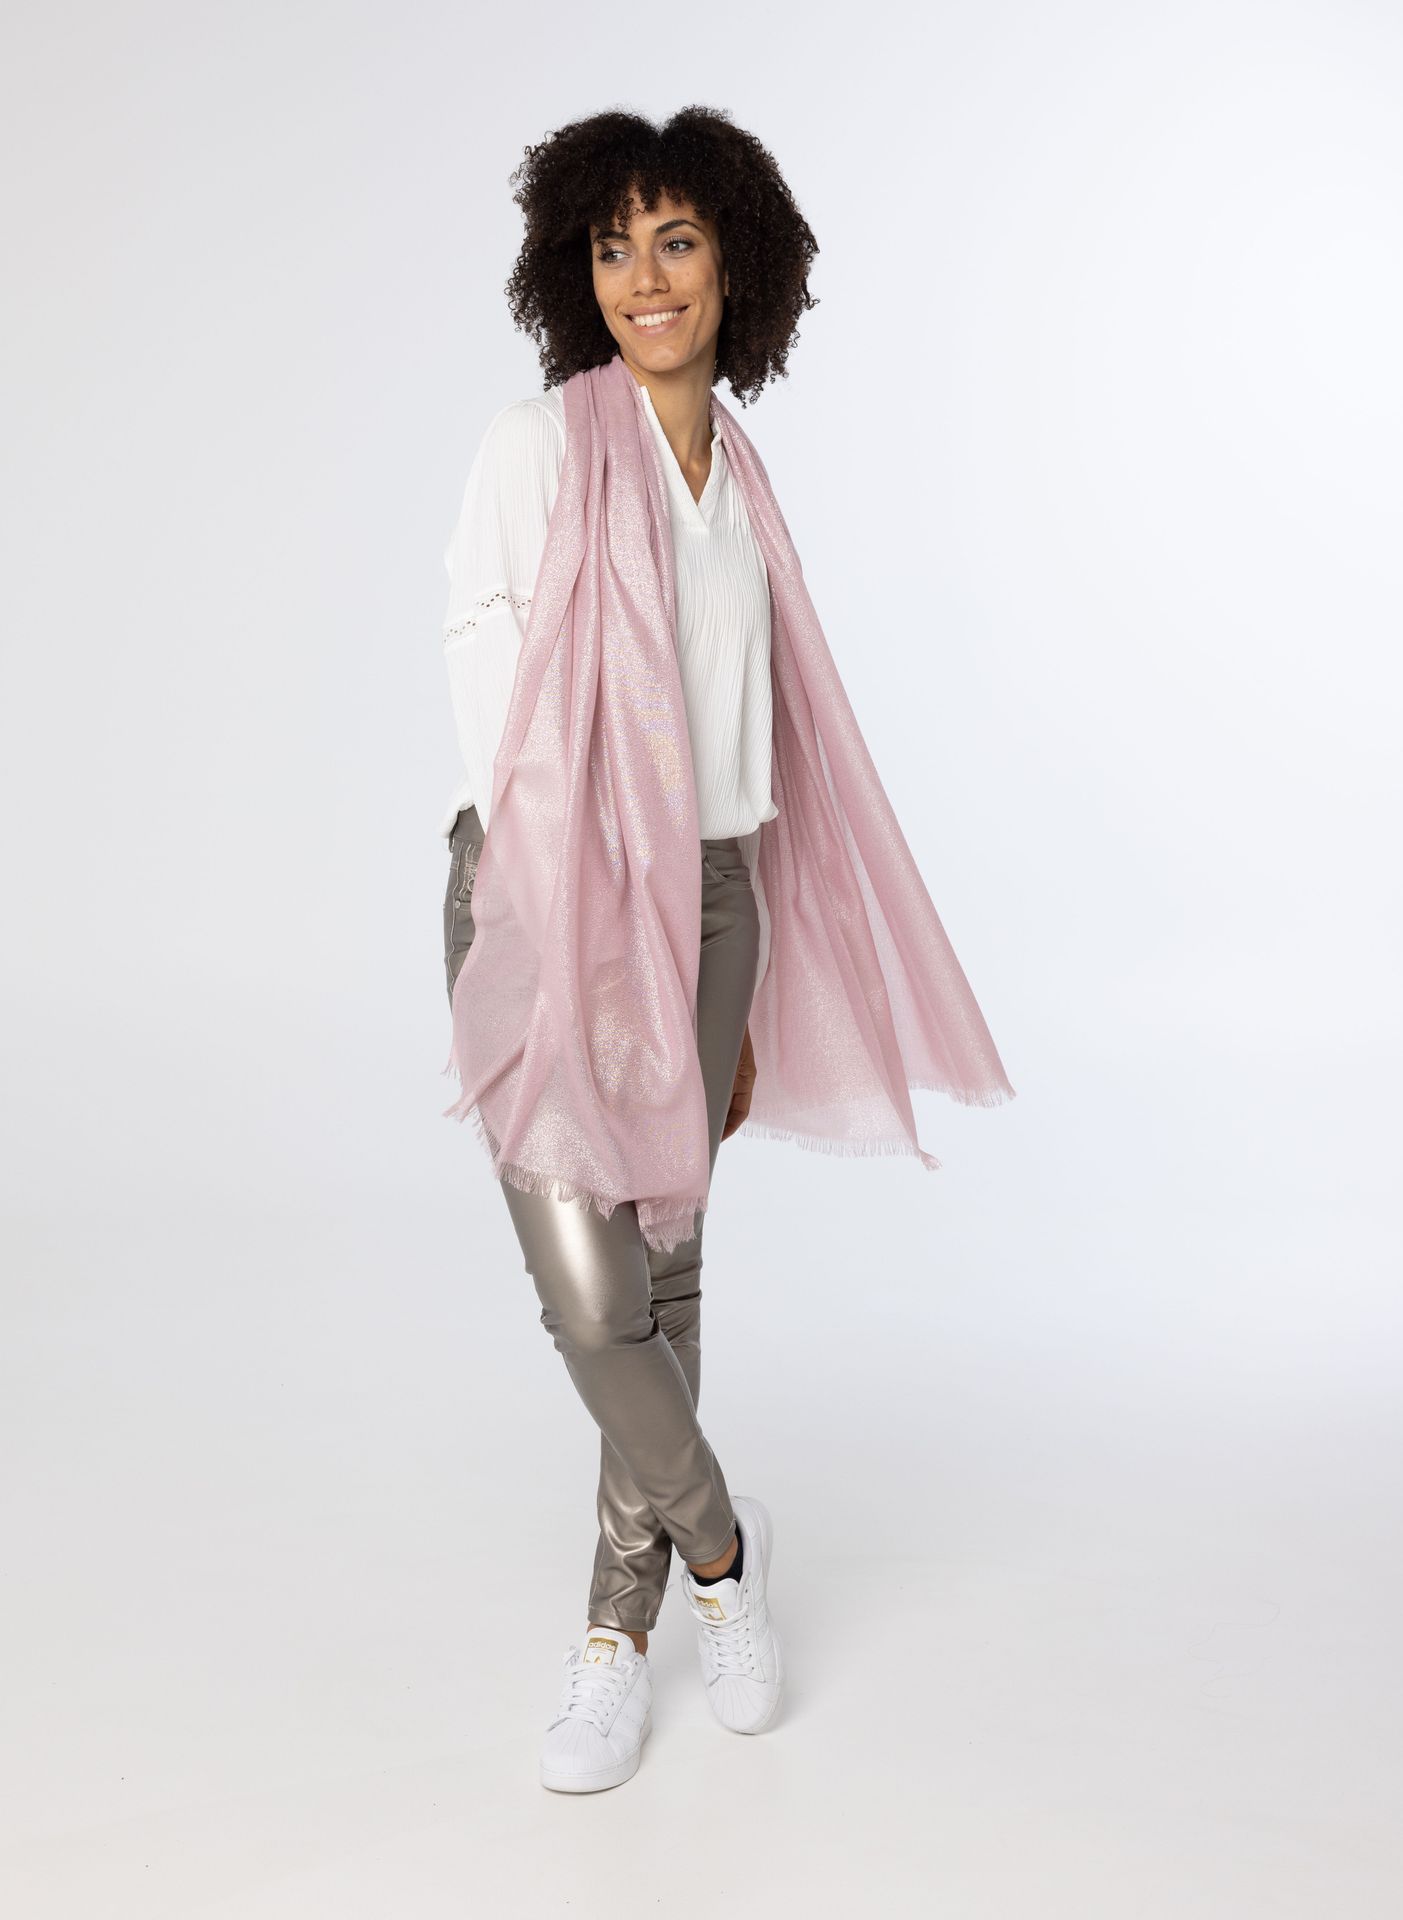 Norah Roze sjaal met glitters pink 214399-900